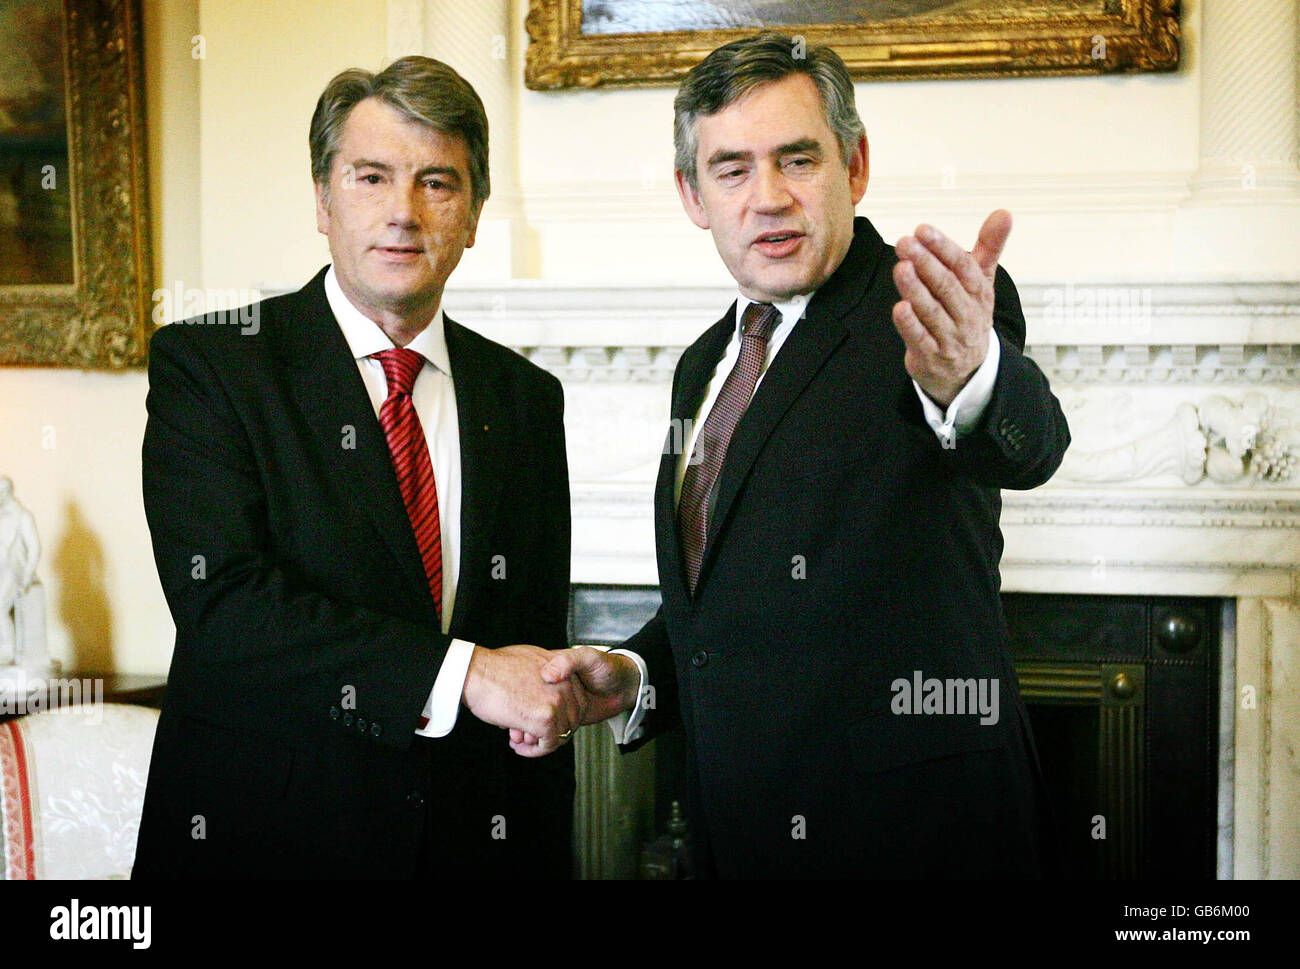 Prime Minister Gordon Brown (right) greets President Viktor Yushchenko of Ukraine in the White room of number ten Downing Street, London. Stock Photo